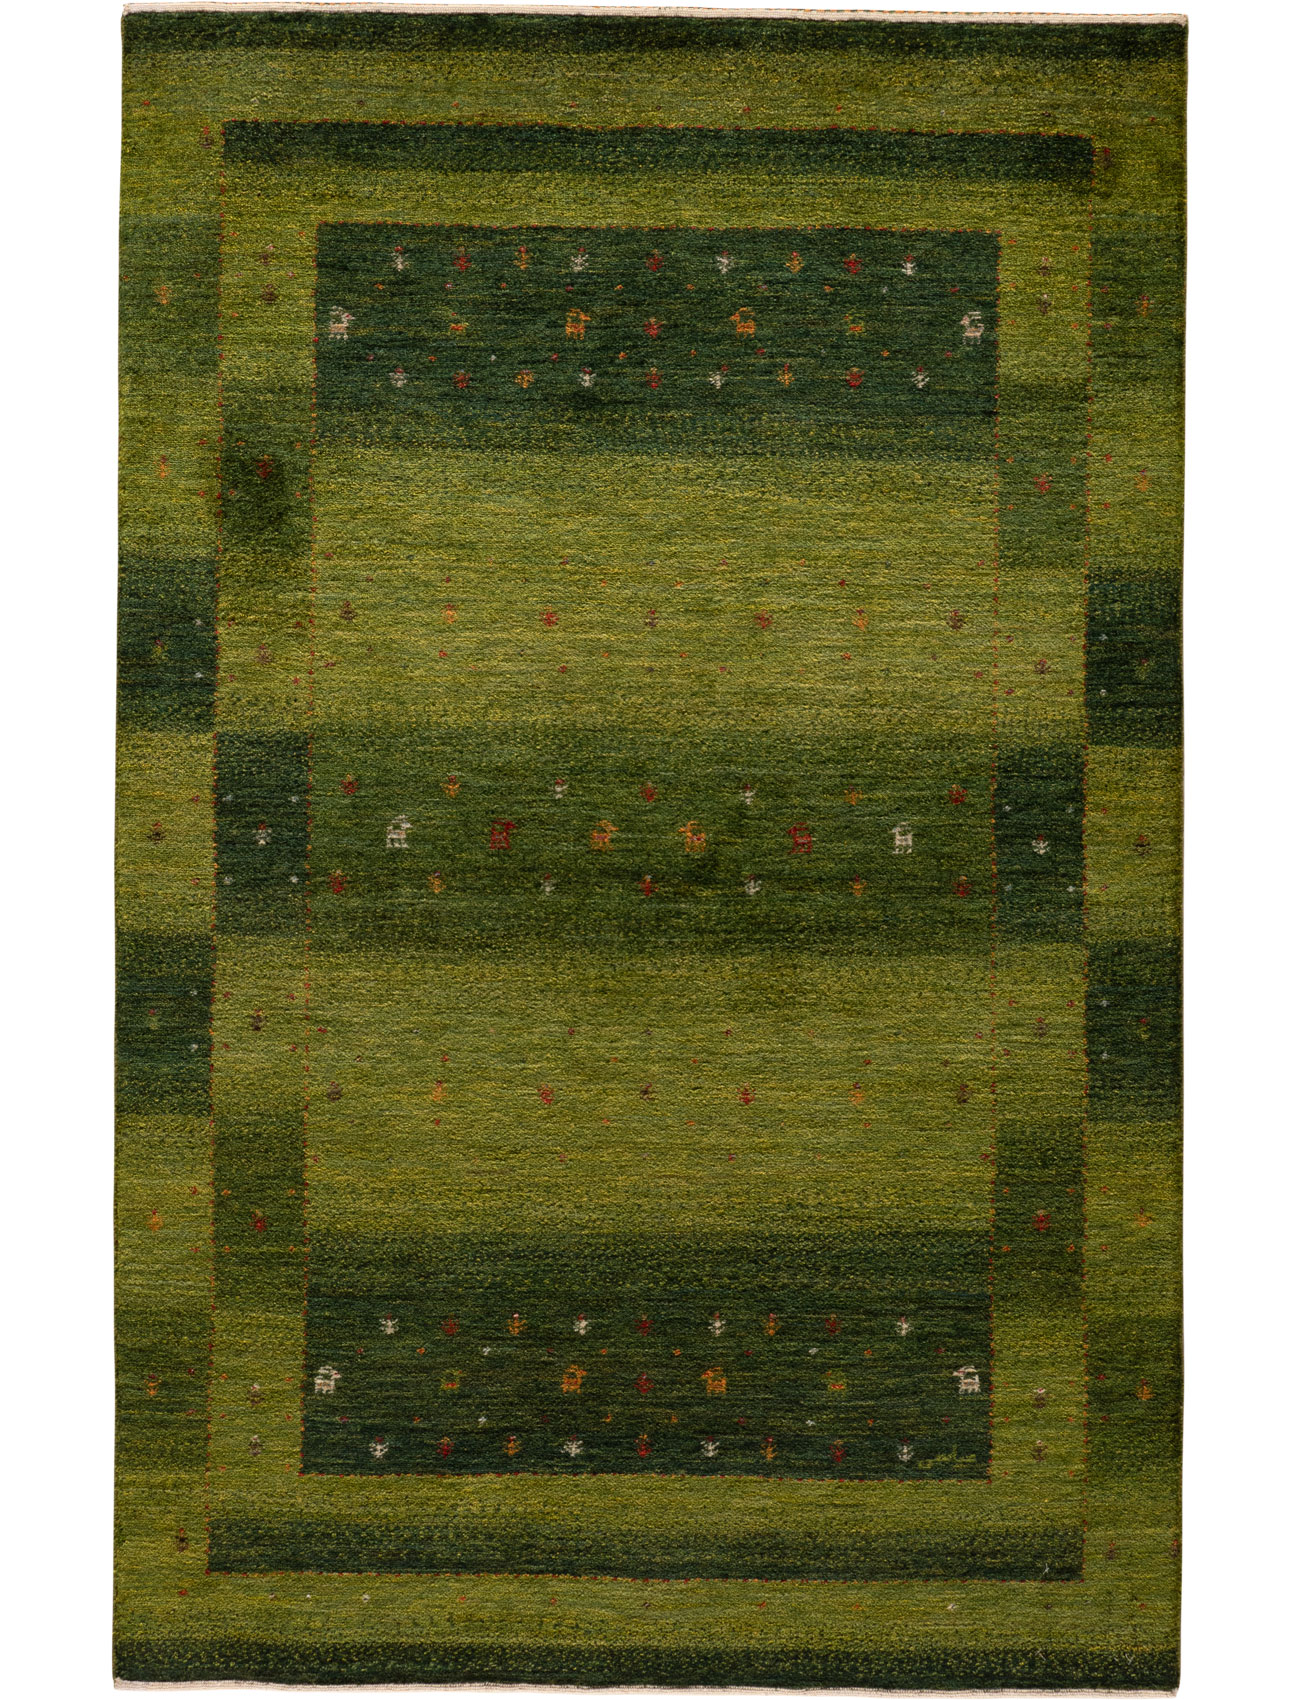 Grüner Teppich, Berber Teppich Grün, Berber Teppich Grün